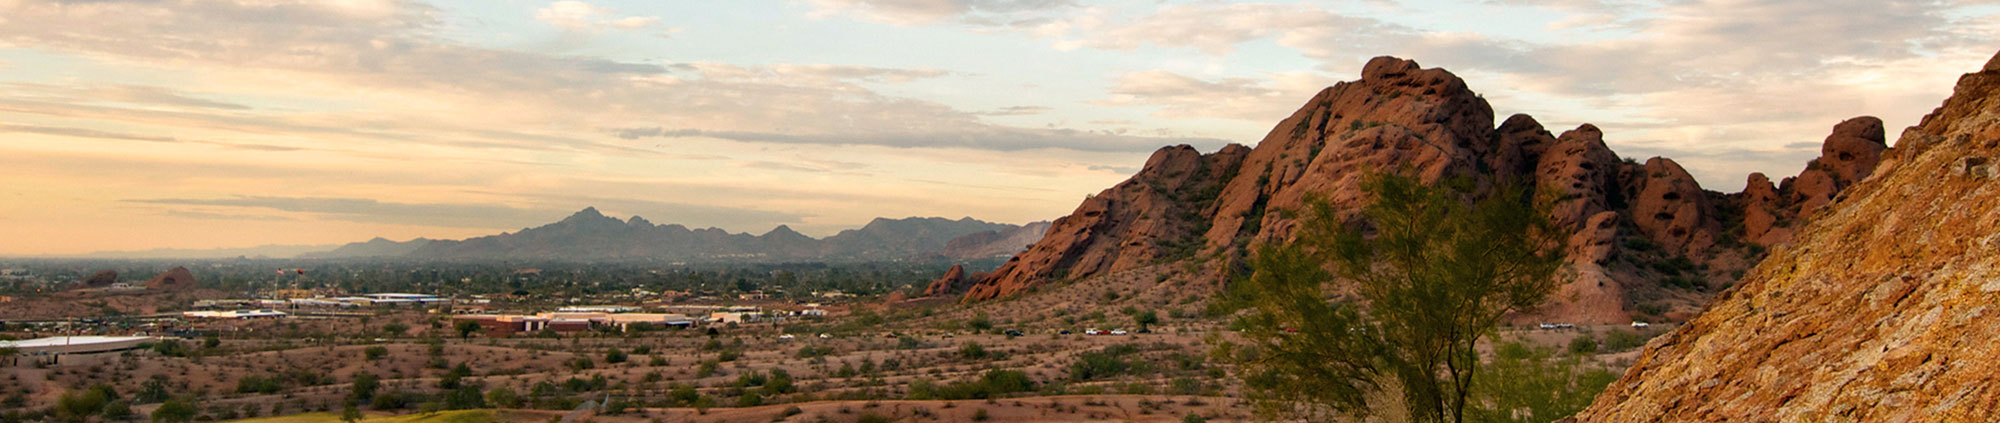 Mountain desert landscape